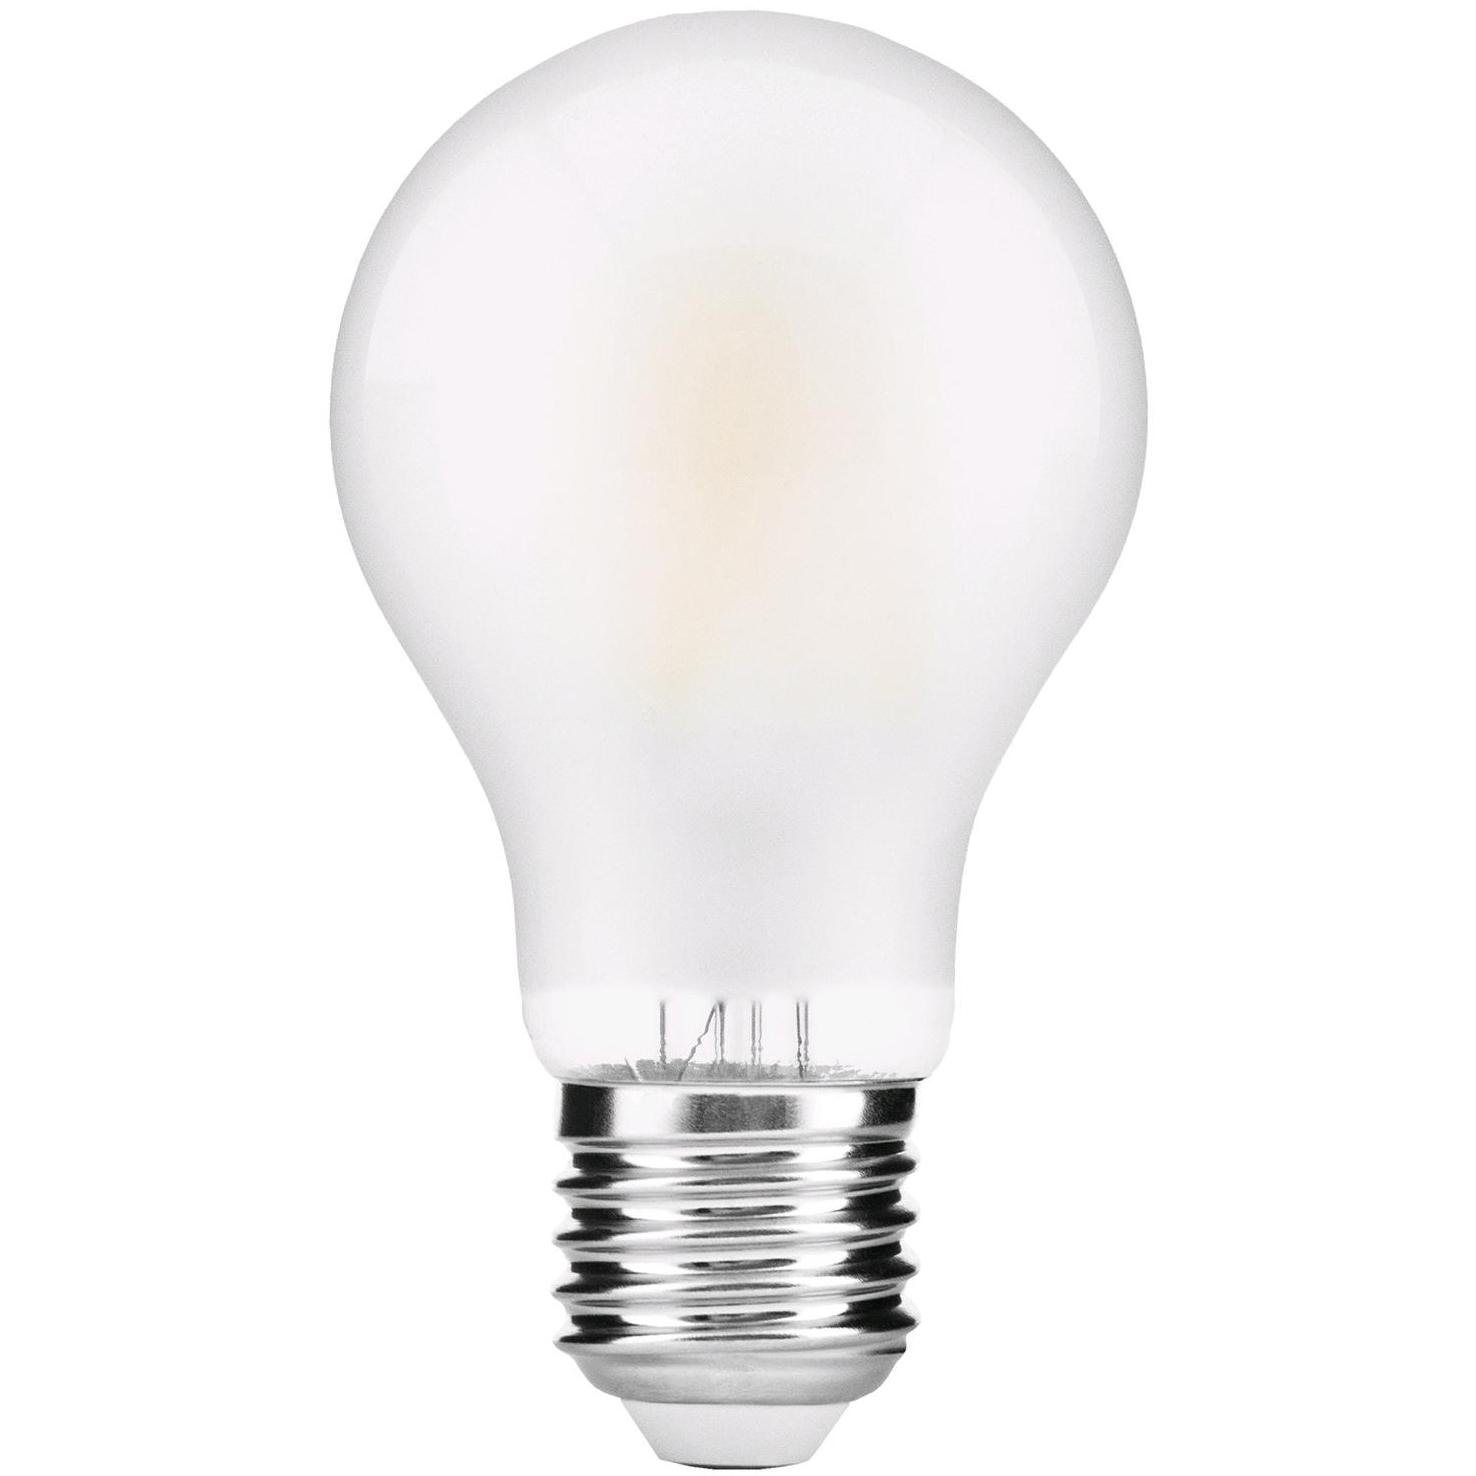 Filament Led Lamp - 1200 Lumen - Lamptype: E27 - Led, Vermogen: 12 Watt - 230 Volt, Lichtsterkte: 1200 lumen, Afmetingen: Ø70mm/H130mm, Lichtkleur: wit - 4000 K.